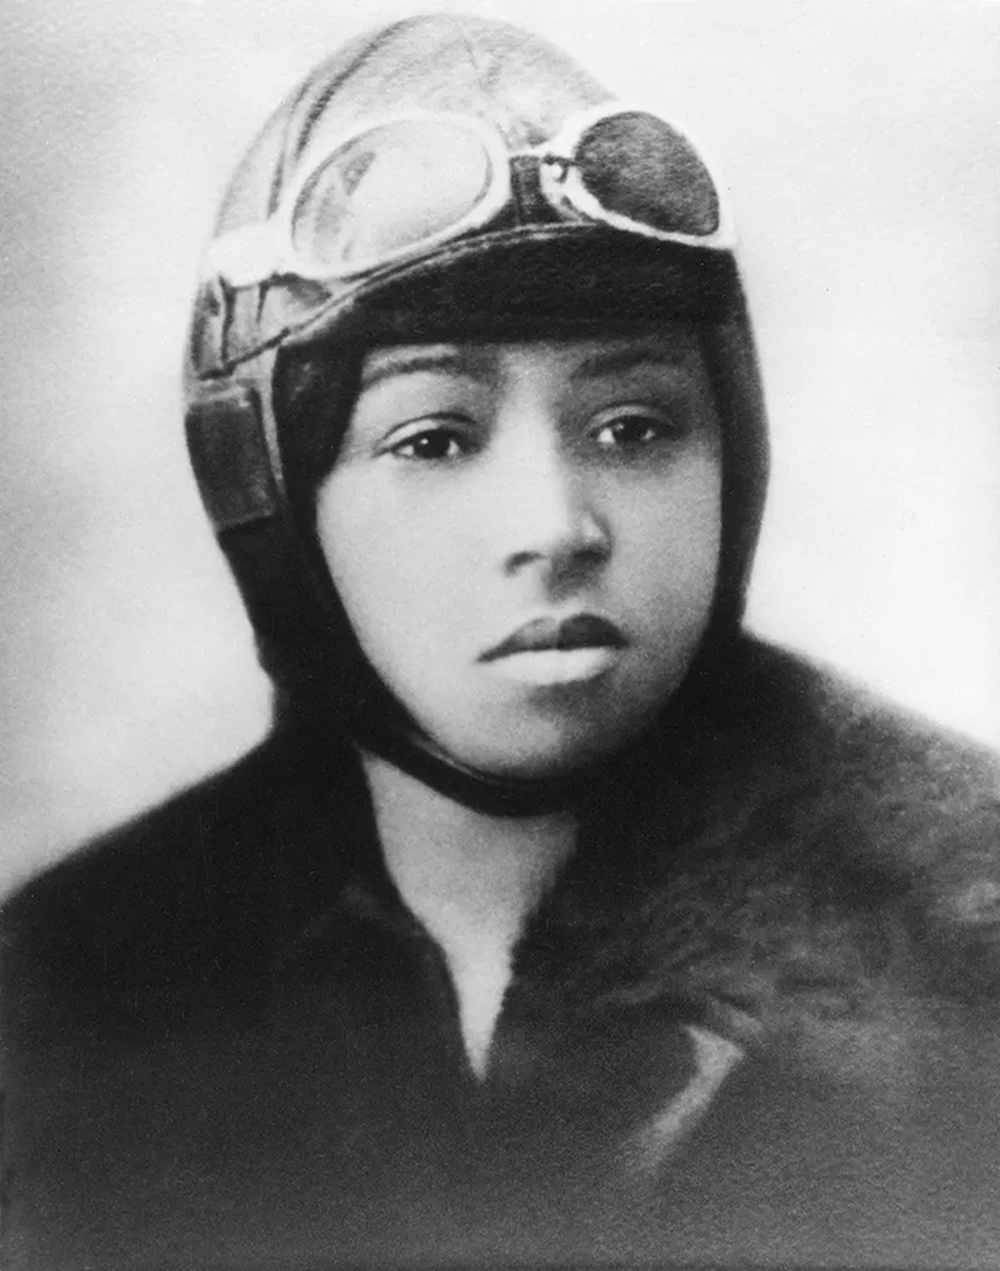 Những bức ảnh cổ điển về nữ phi công đầu tiên trong lịch sử, giai đoạn 1900-1930 - Ảnh 1.